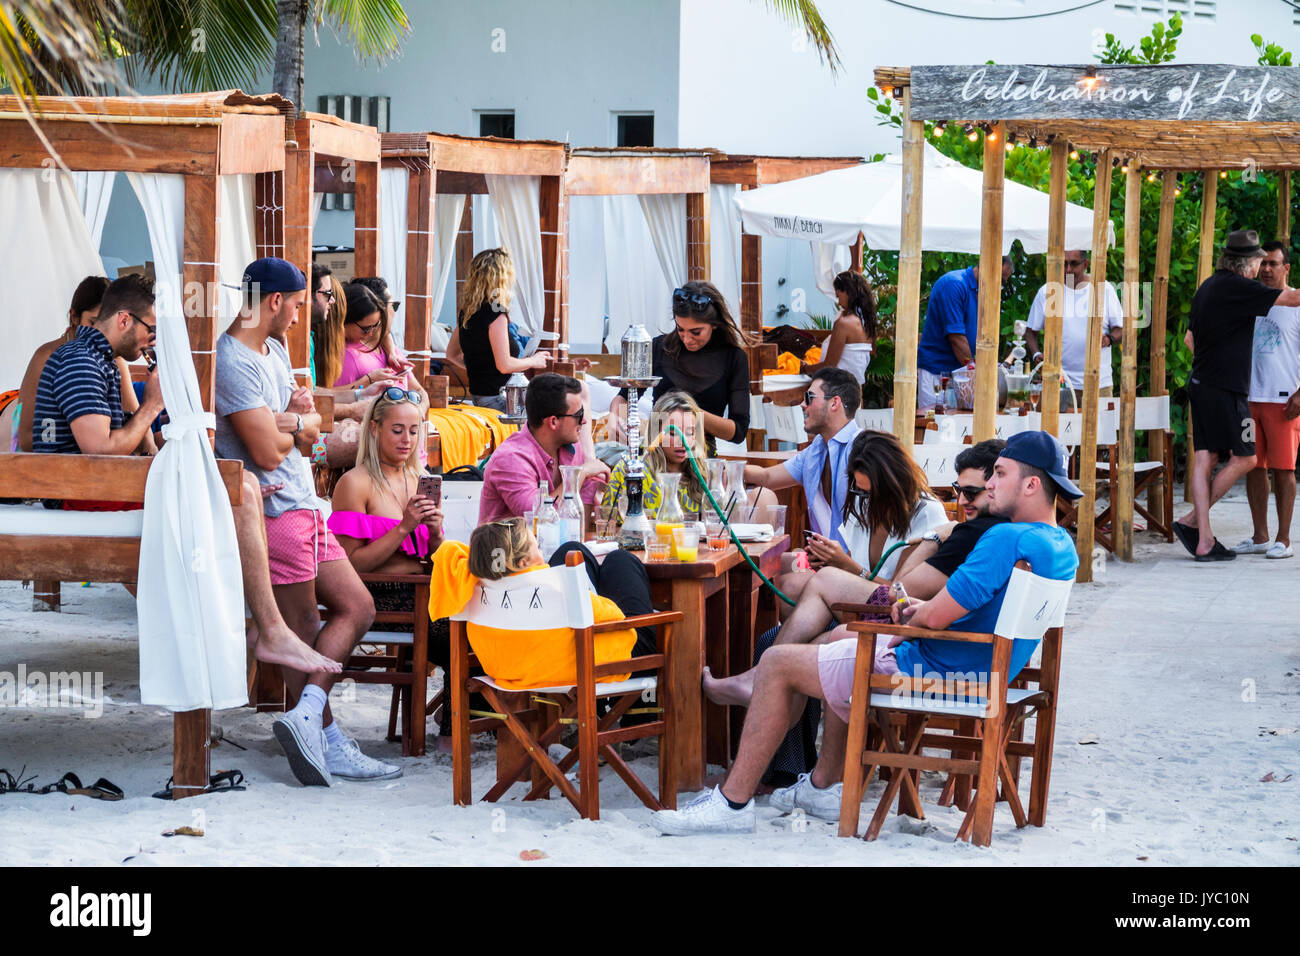 Miami Beach Florida, Nikki Beach, club de playa de lujo, arena, al aire libre, adultos jóvenes, FL170430063 Foto de stock